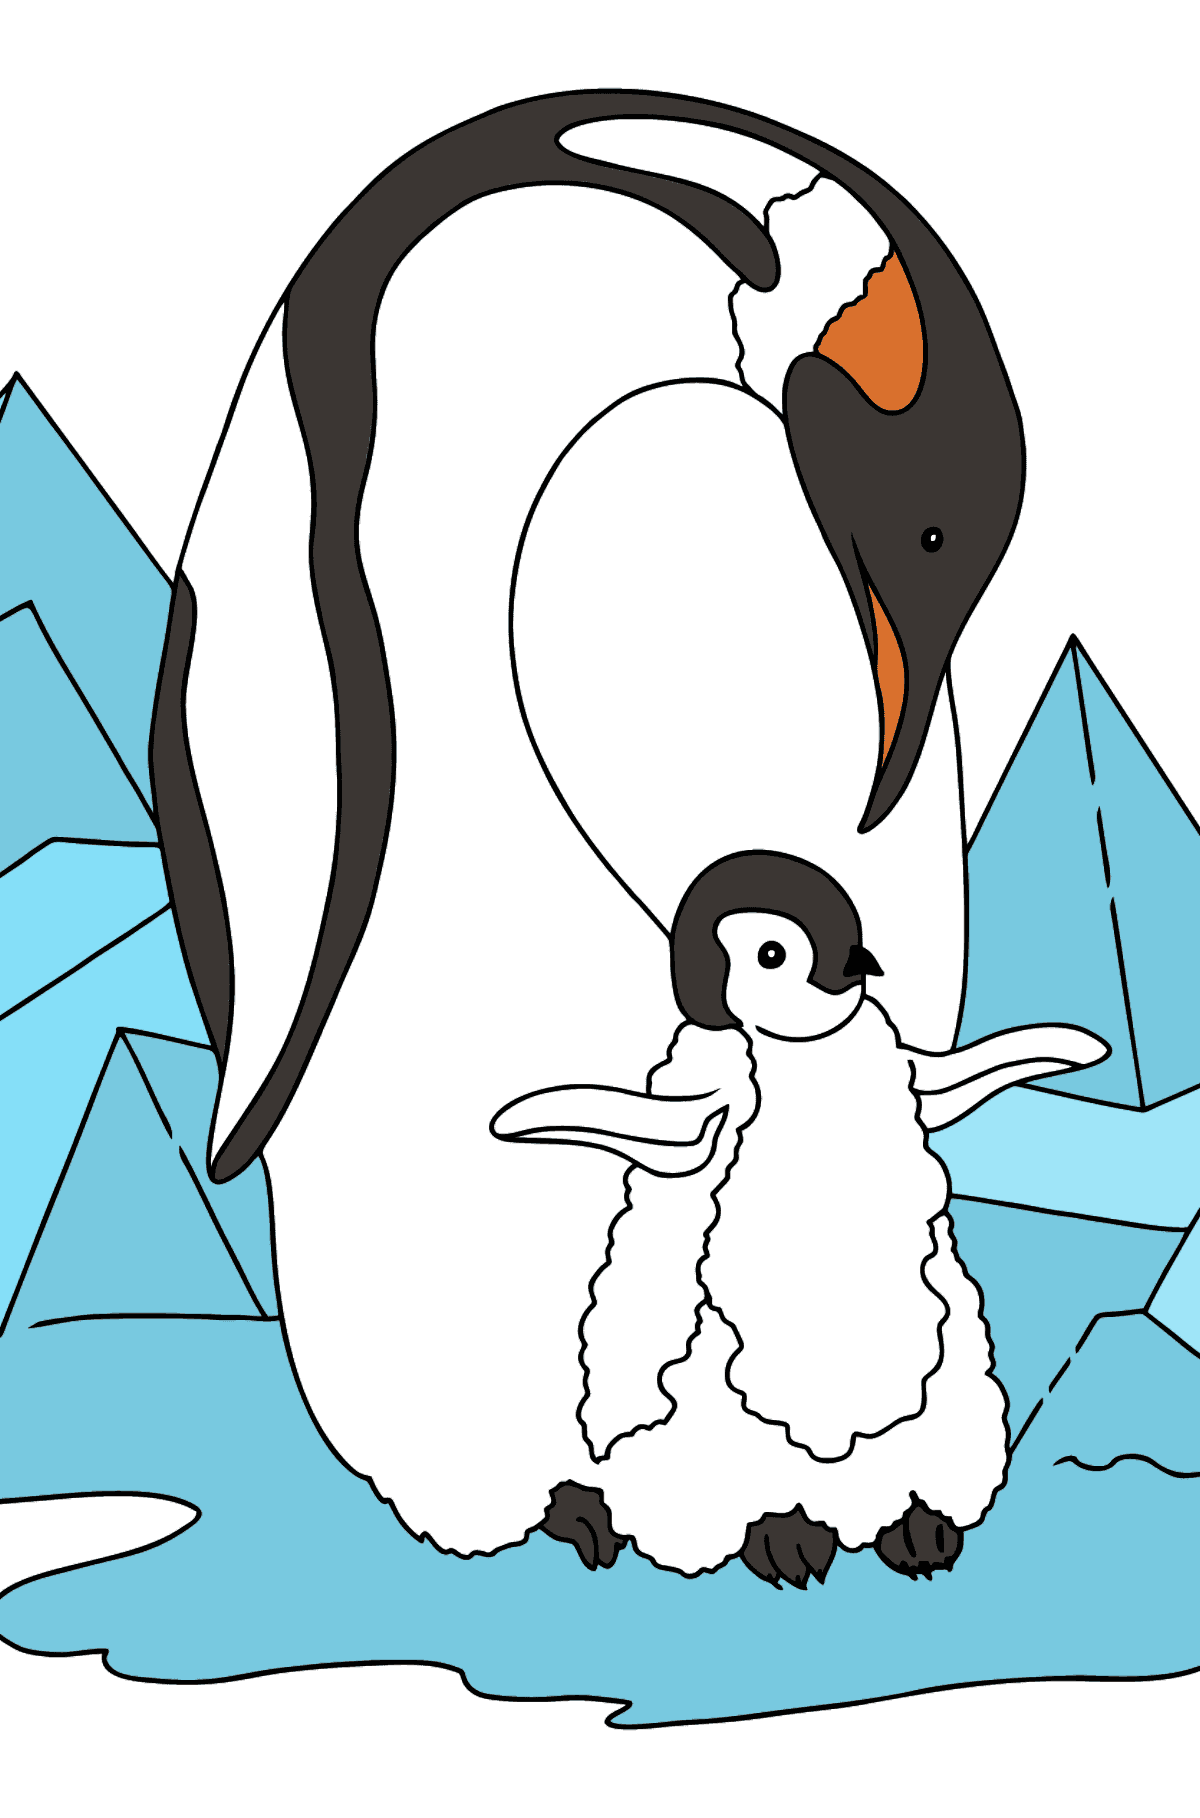 Tegning til farvning pingvin til børn - Tegninger til farvelægning for børn